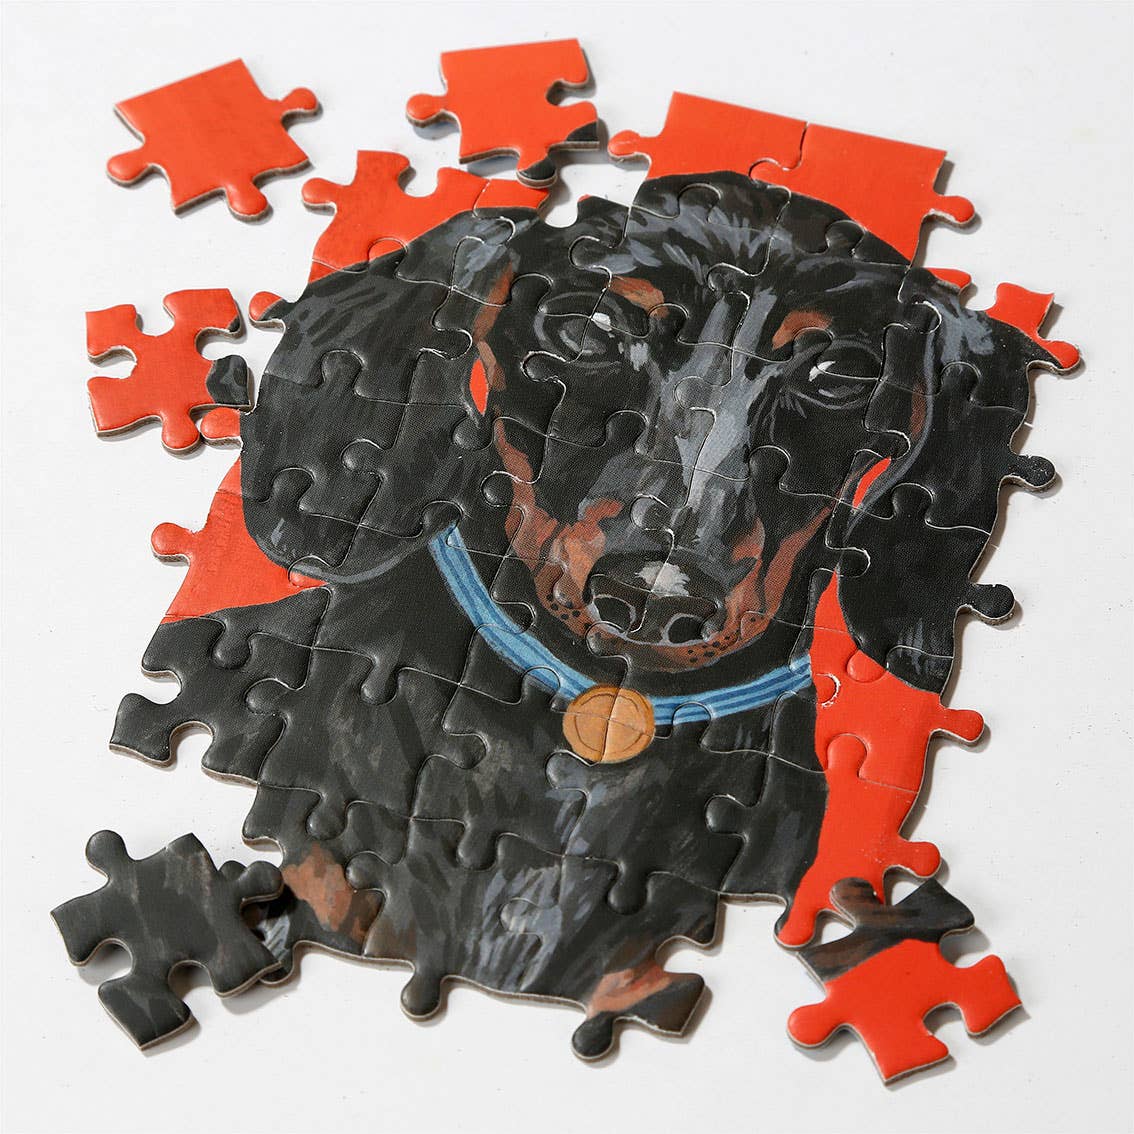 Puzzle de 100 pièces Chien - Pooch Puzzles